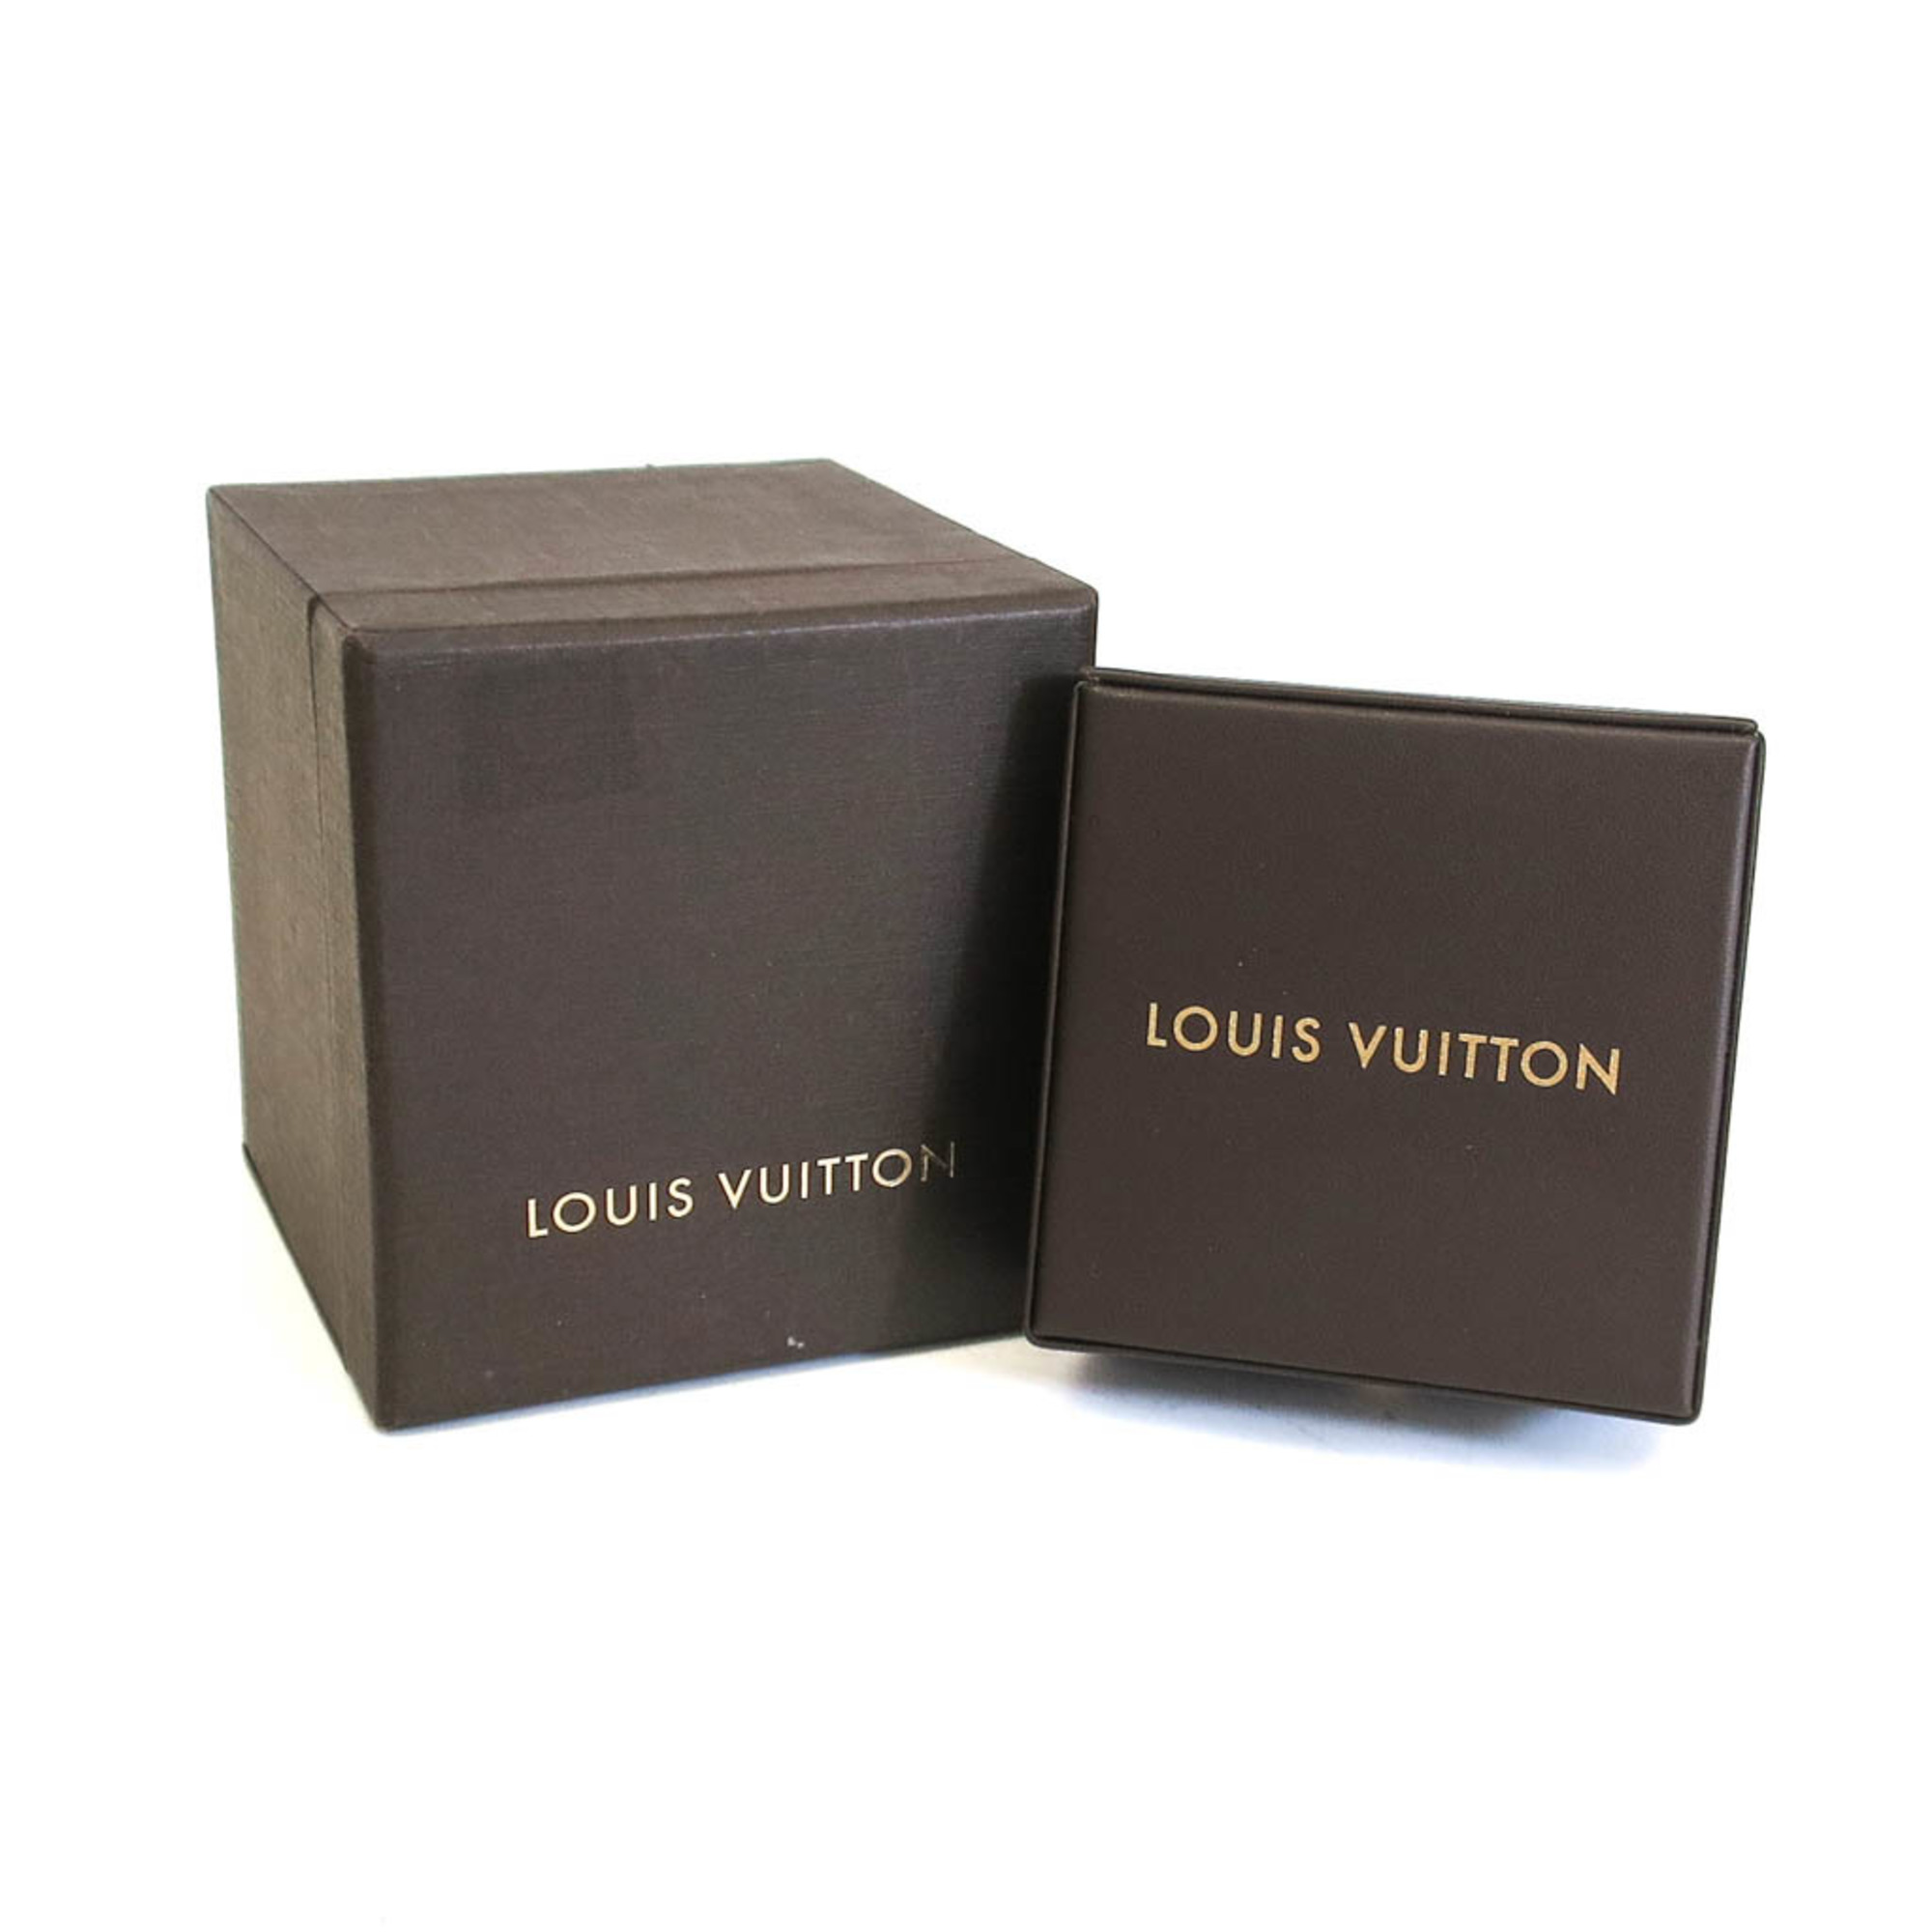 ルイ・ヴィトン(Louis Vuitton) バーグモノグラムイディール リング Q9F15G K18ピンクゴールド(K18PG),K18ホワイトゴールド(K18WG),K18イエローゴールド(K18YG) ファッション ダイヤモンド バンドリング ゴールド